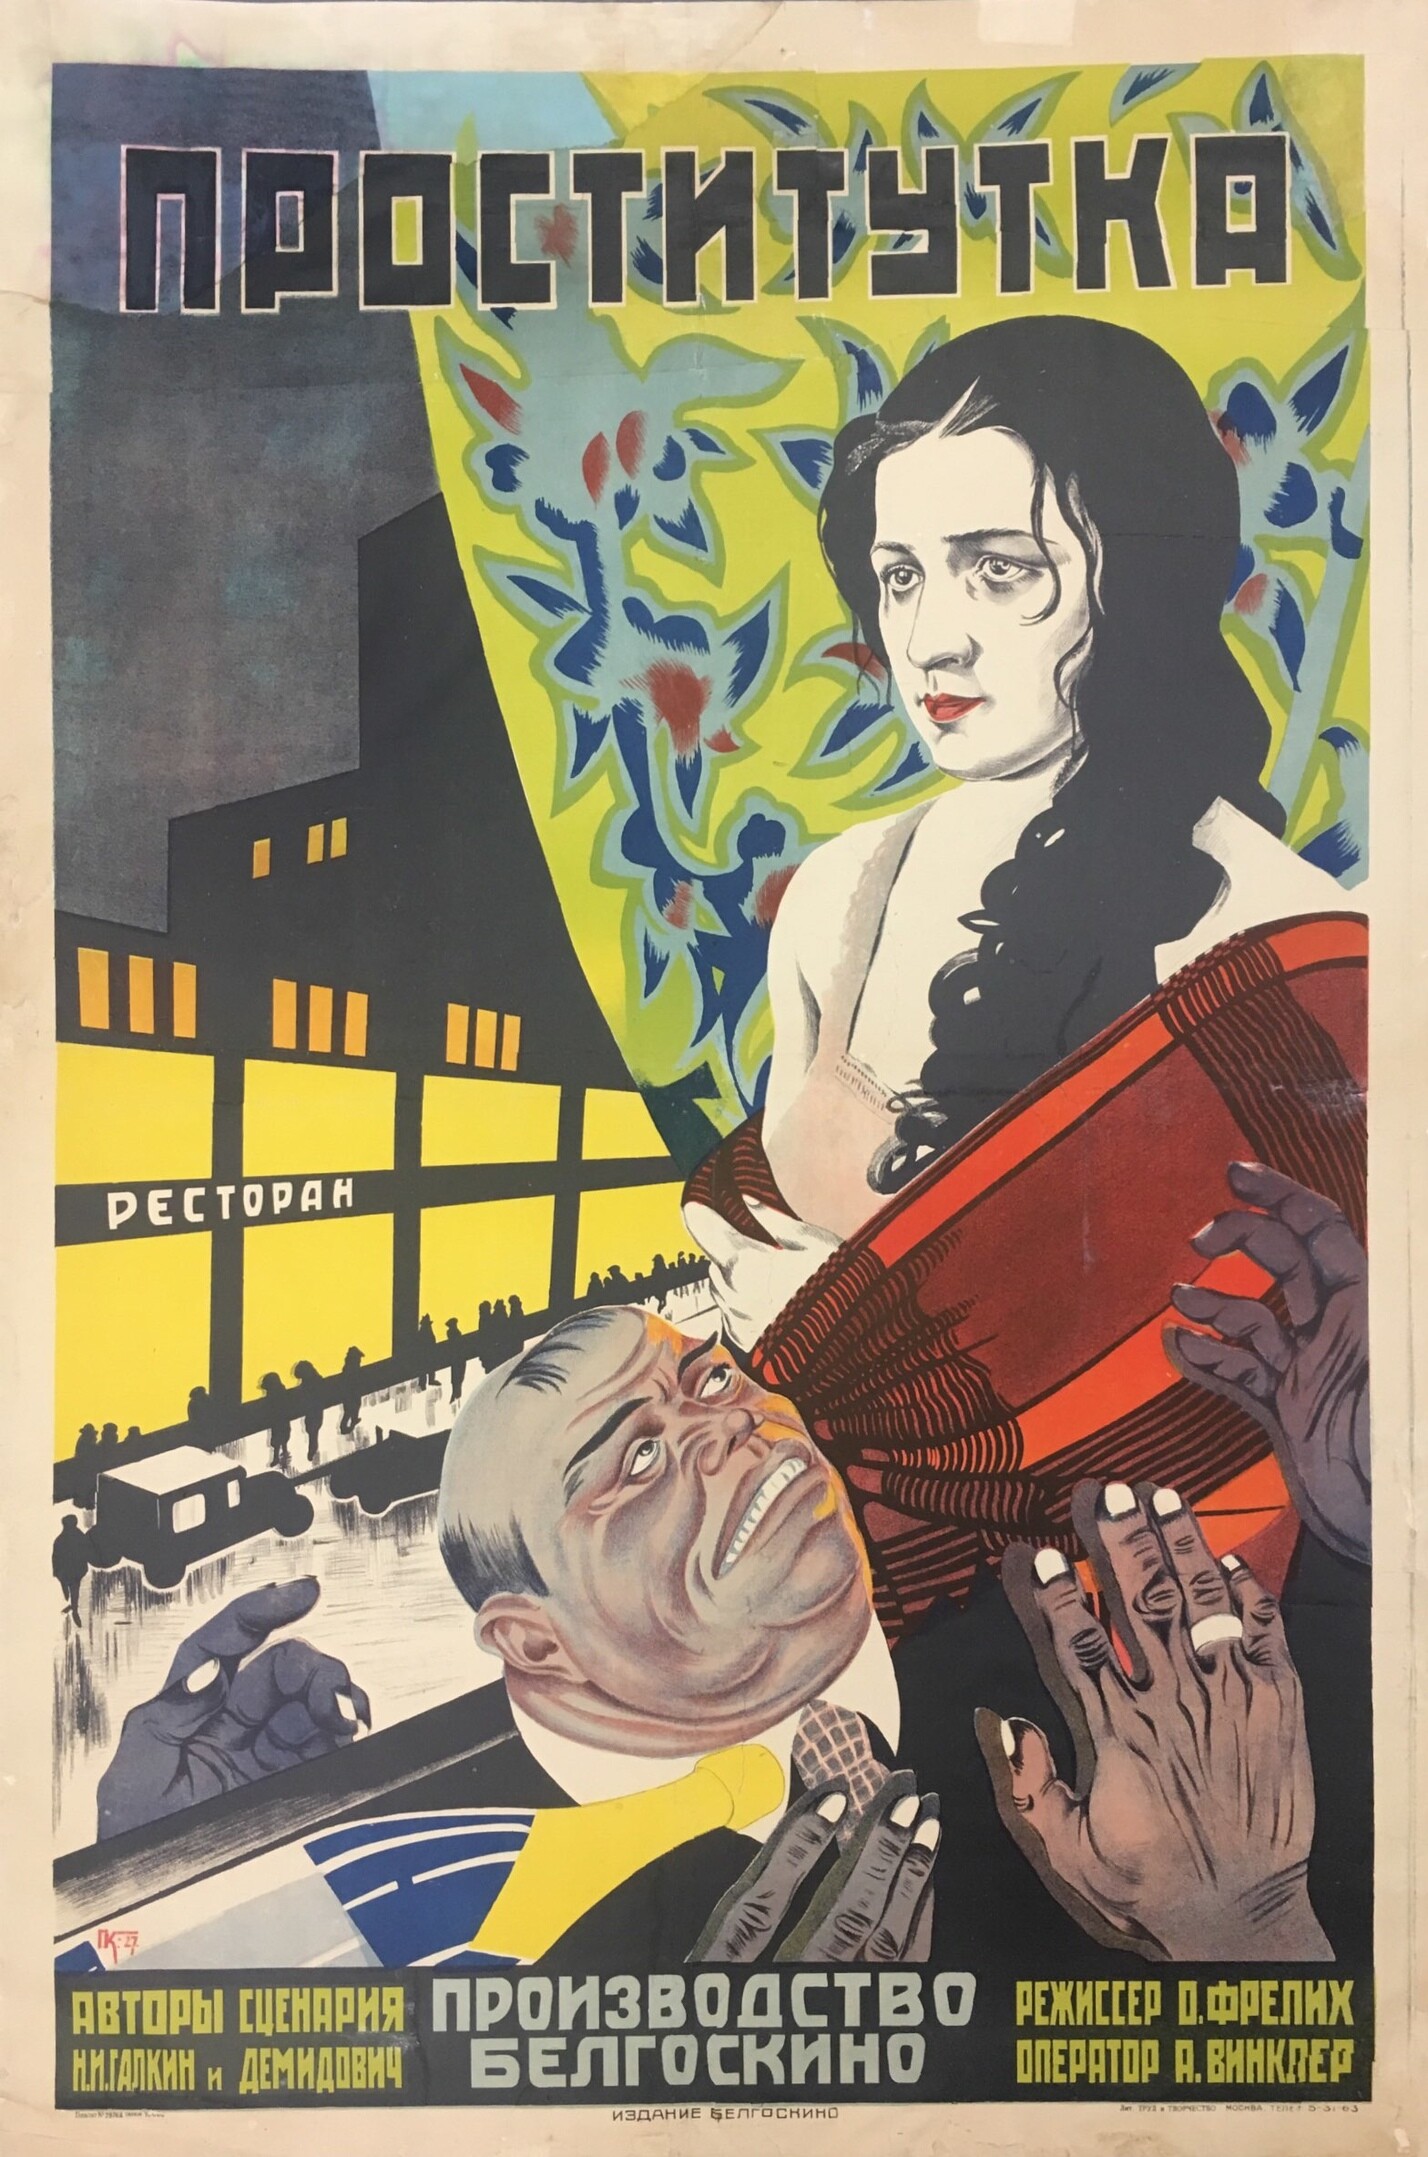 Проститутка, 1927 год, режиссёр О. Фрелих, плакат к фильму, автор 	
Кекушева Е.